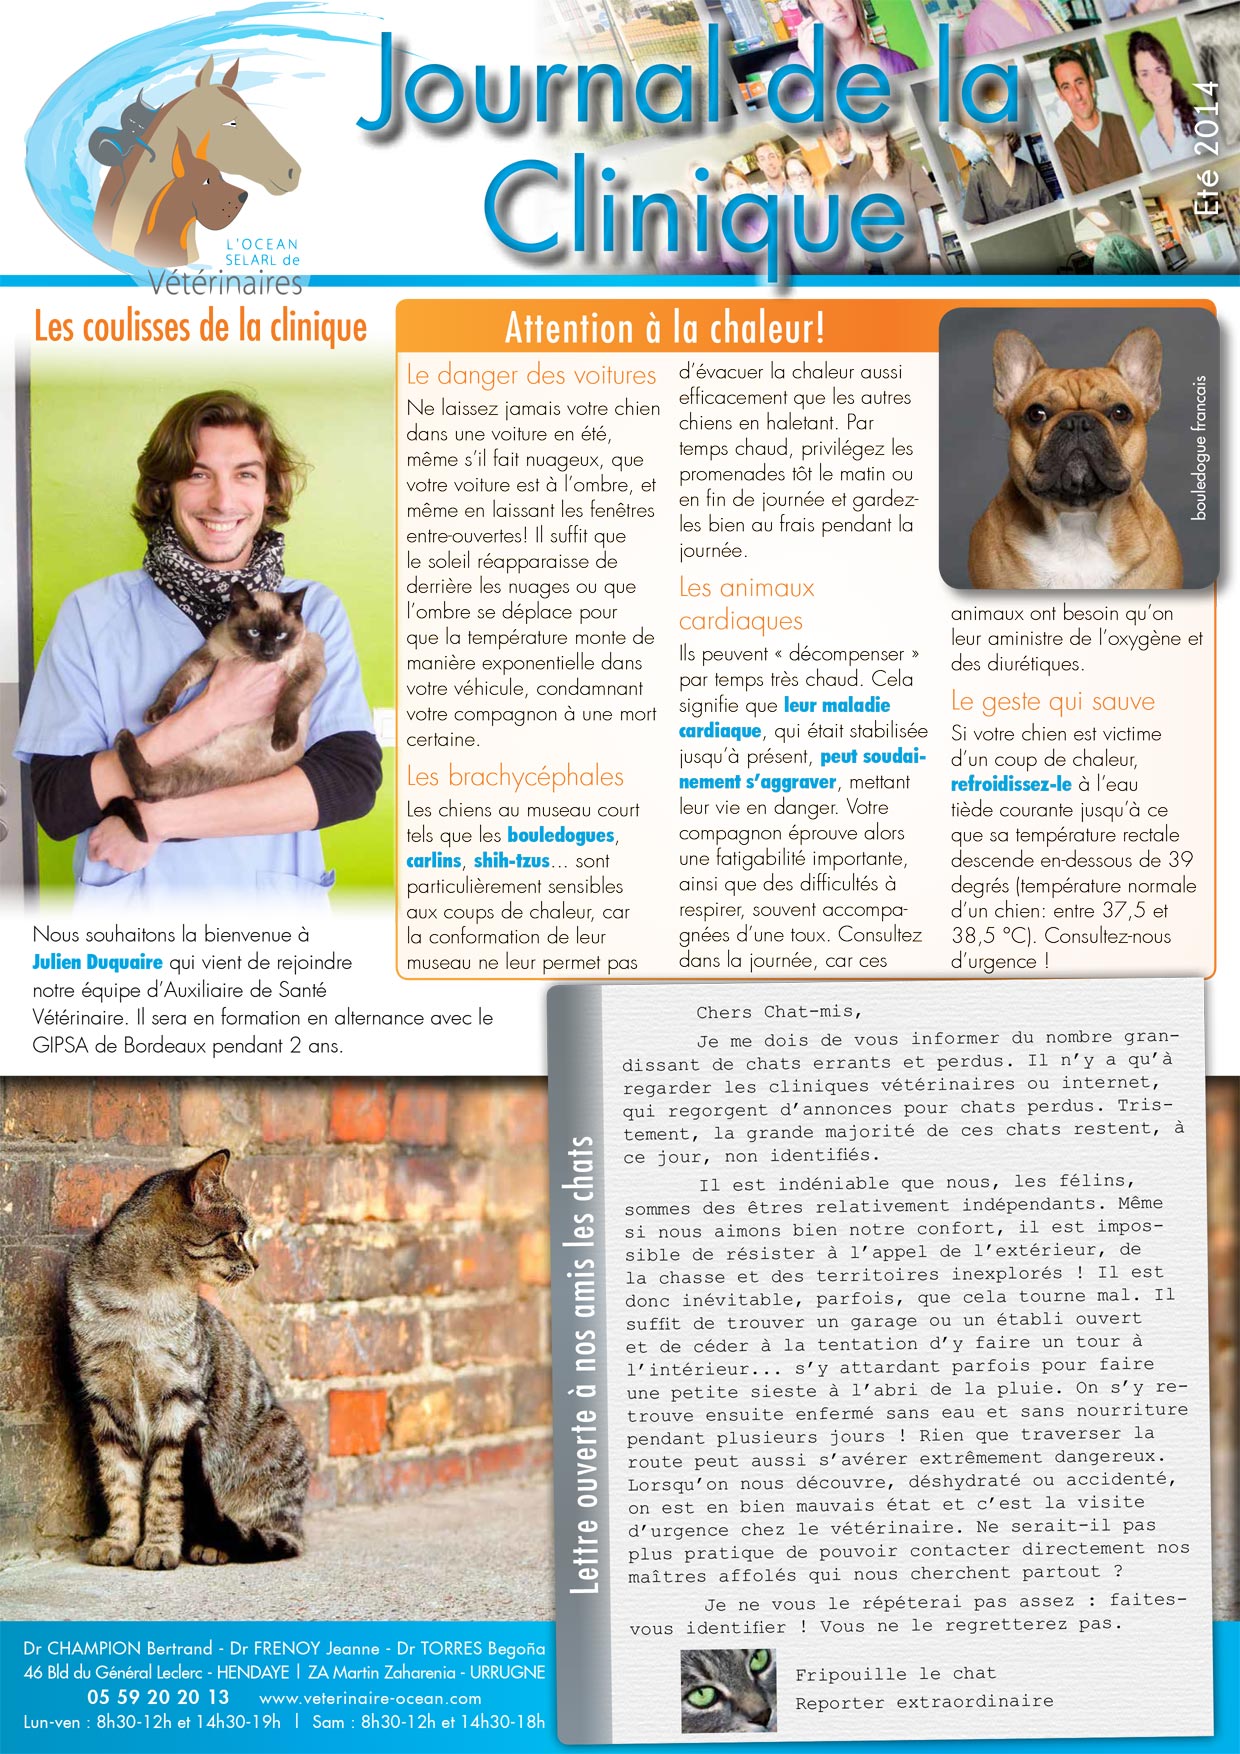 Le Journal de la Clinique - Eté 2014 page 1